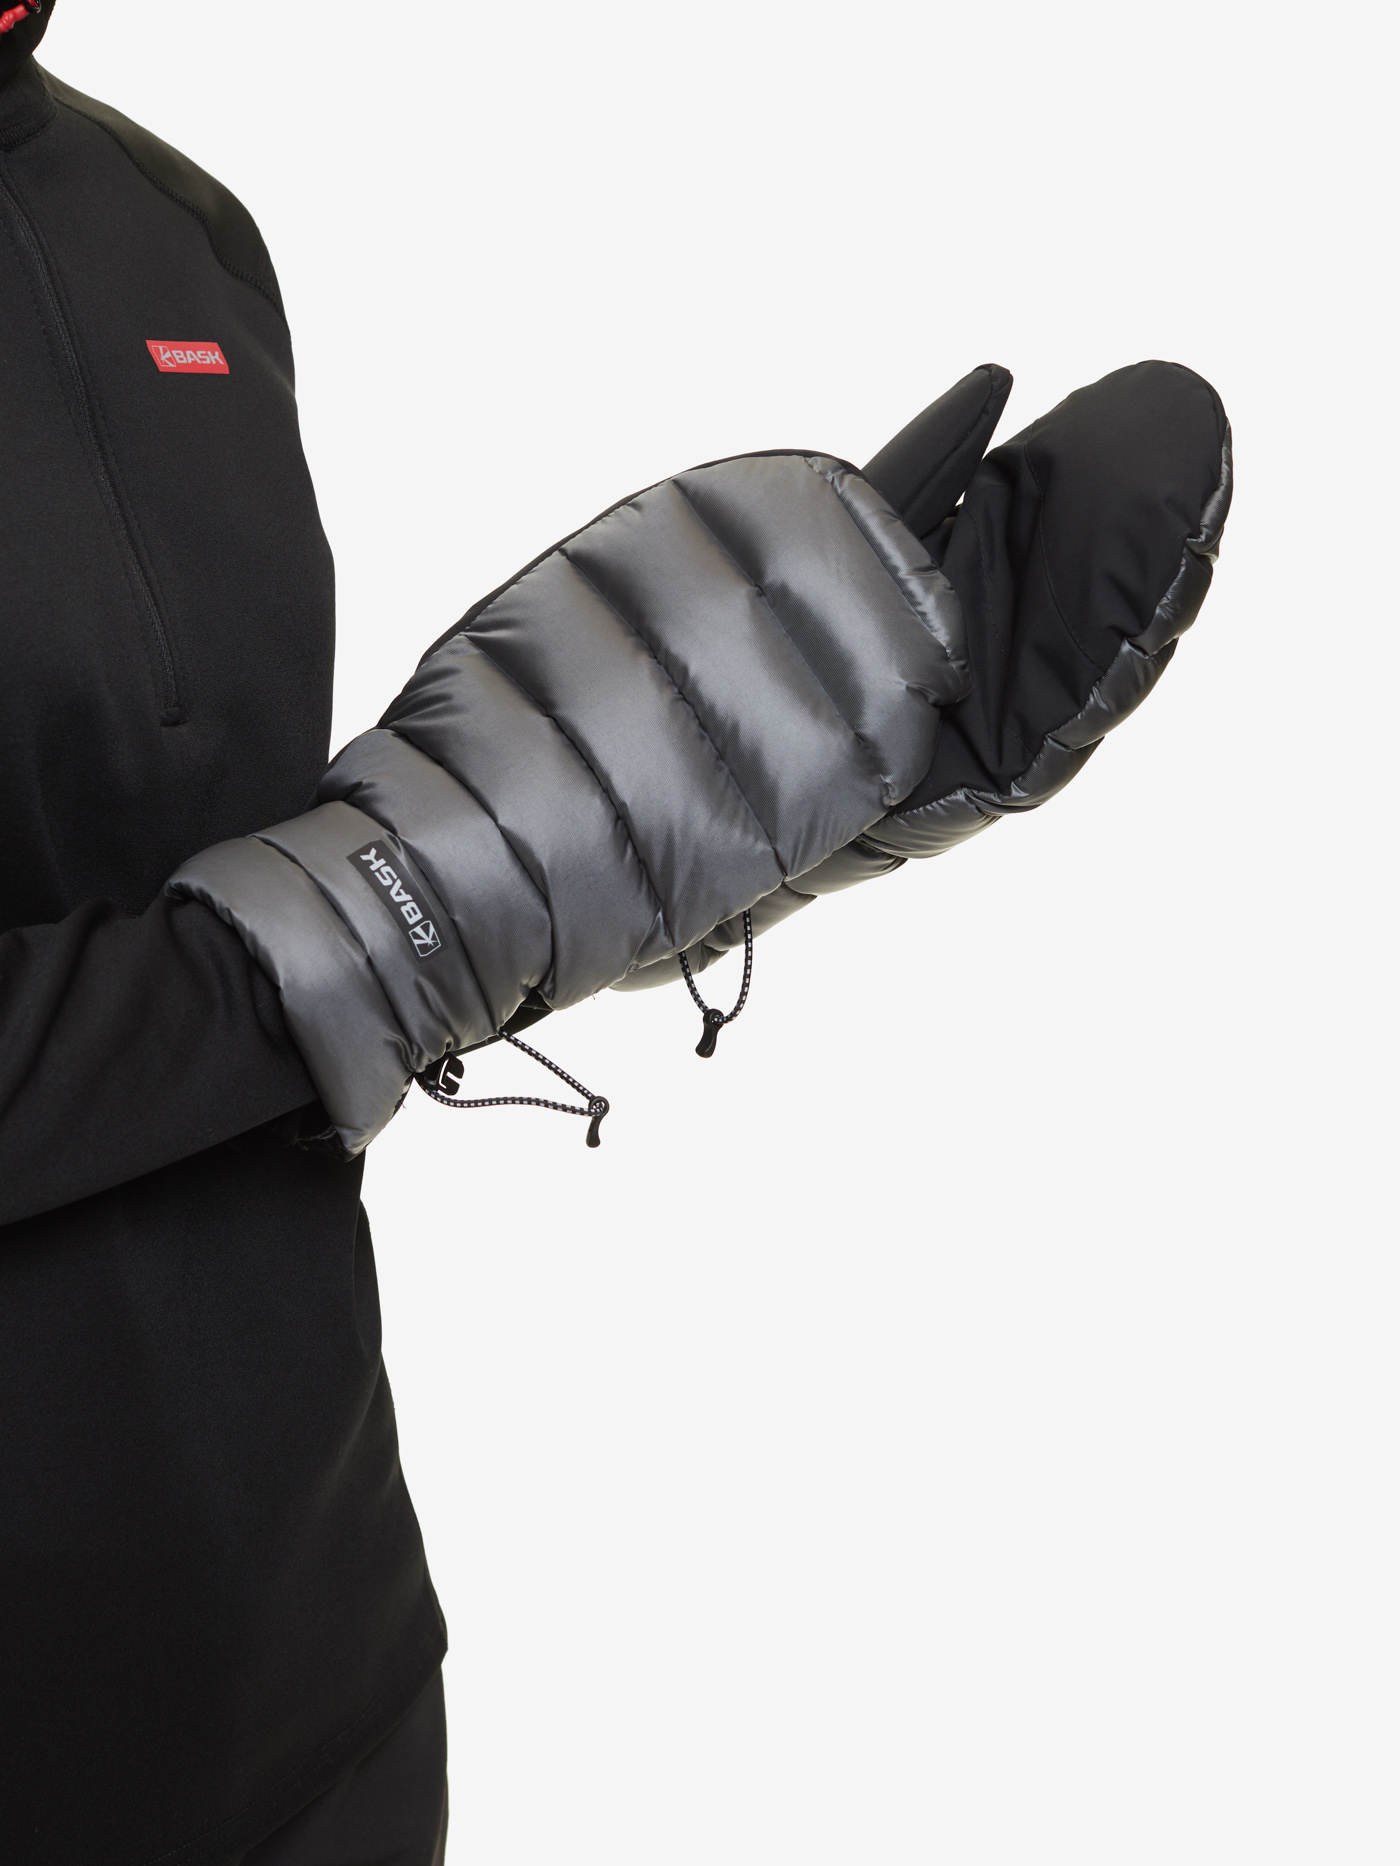 Пуховые рукавицы BASK, размер M, цвет колониальный синий 19H57-9378-M D-tube mitts - фото 17